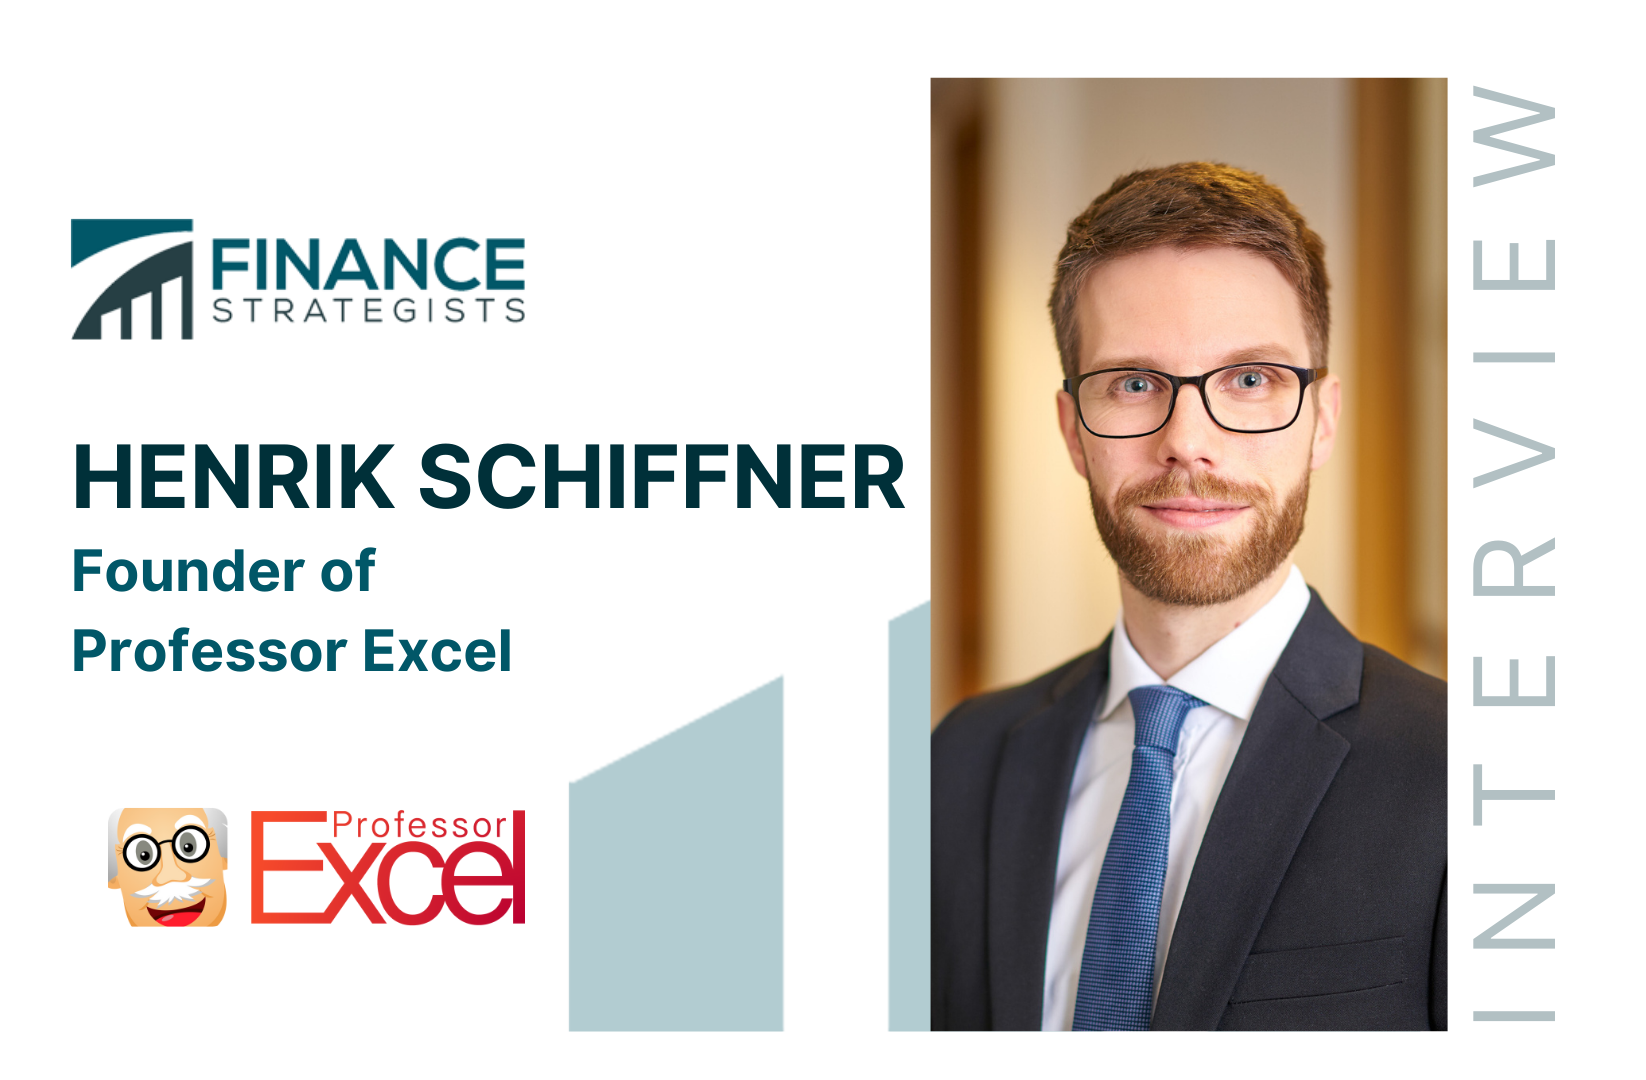 Henrik Schiffner | Founder of Professor Excel